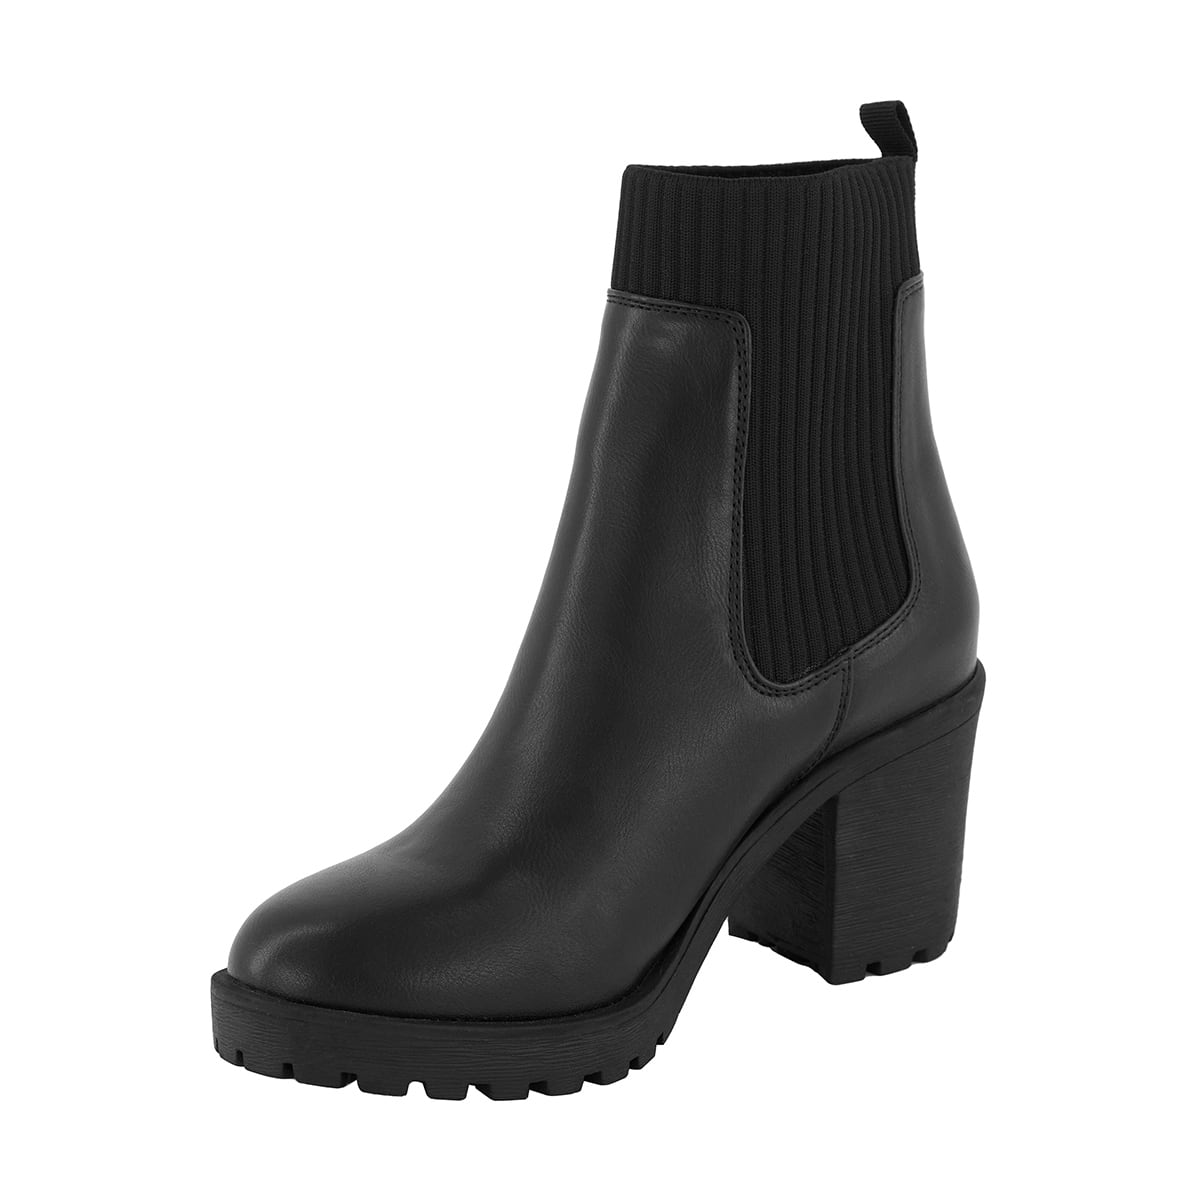 Gusset High Heel Boots - Kmart